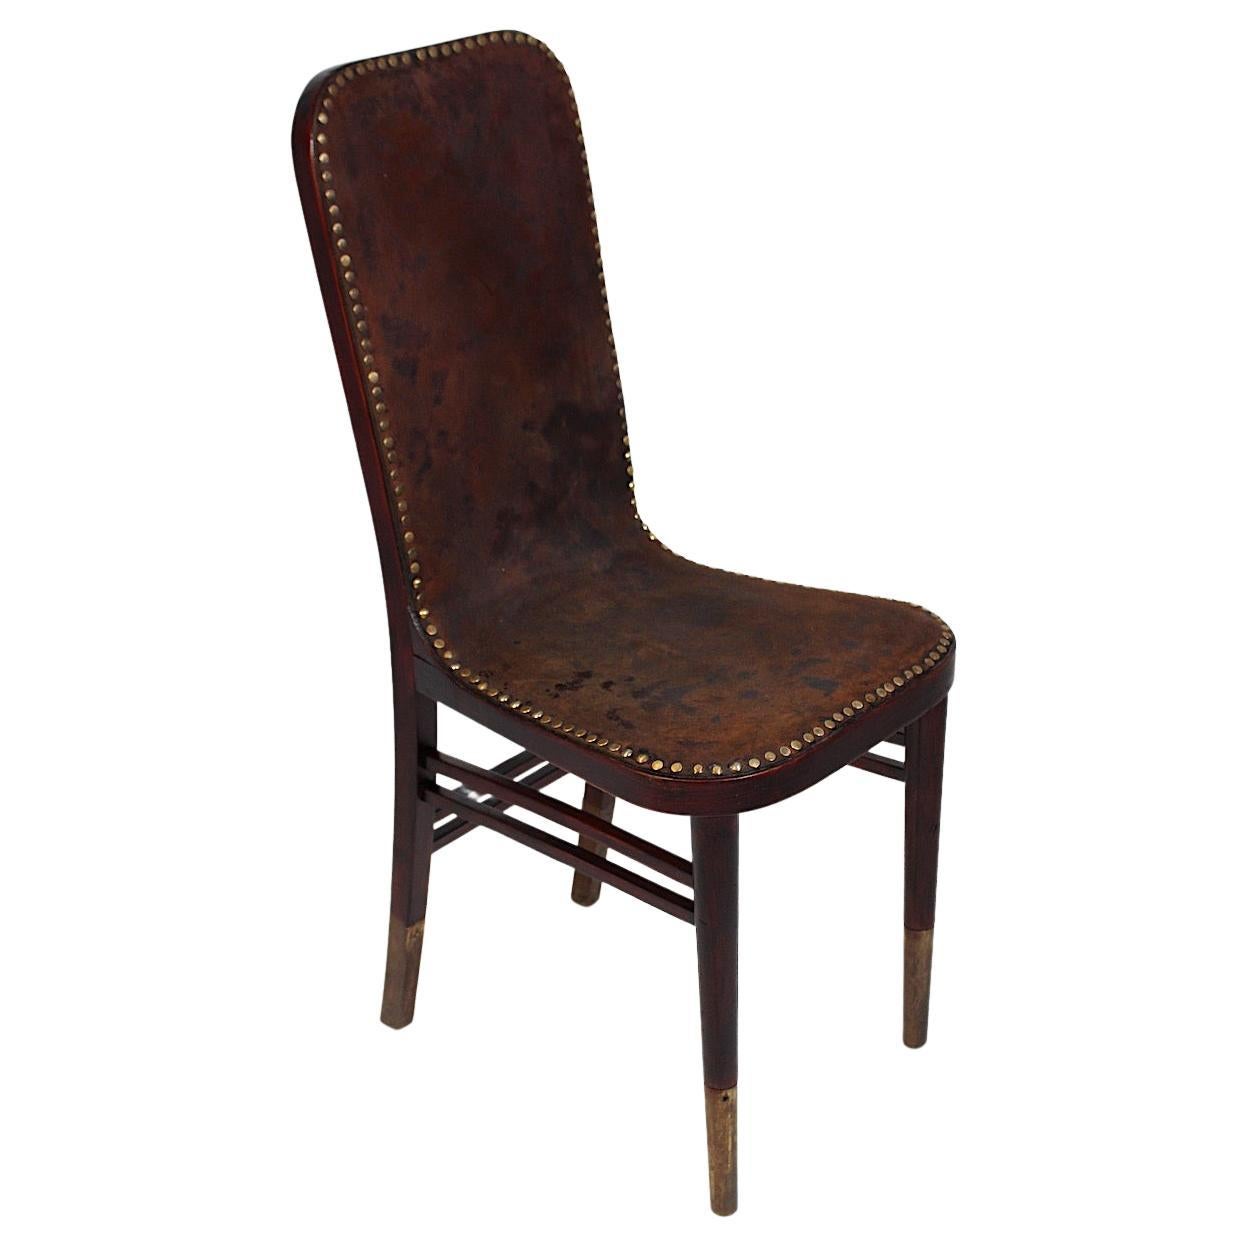 Chaise d'appoint Jugendstil en cuir de Beeche par Joseph Urban Gebrüder Thonet 1903 Vienna en vente